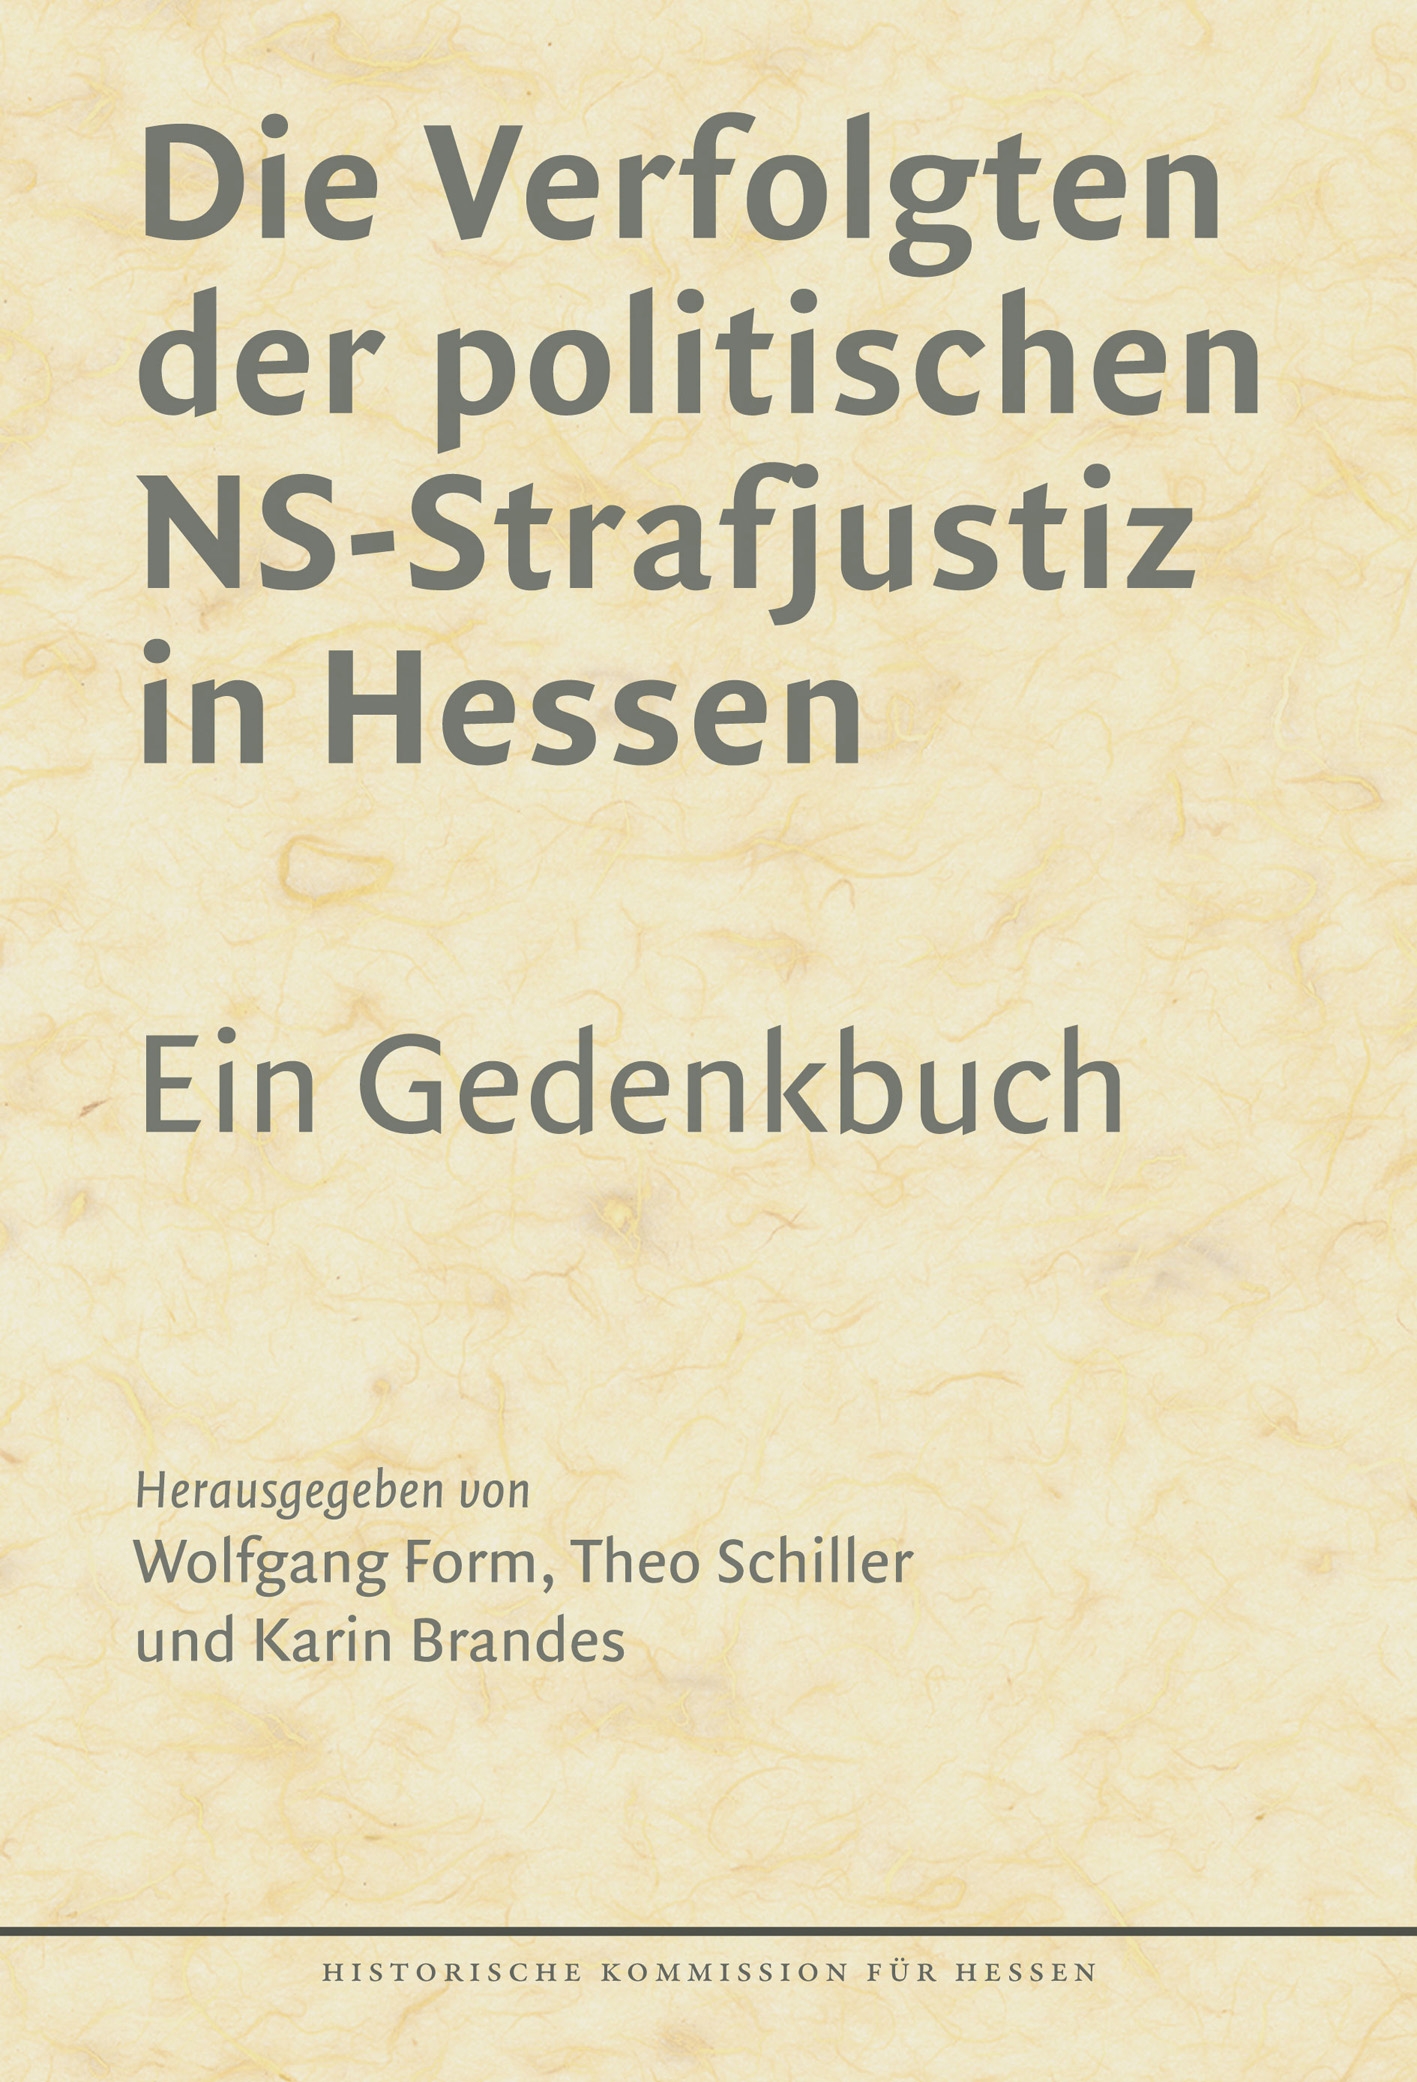 Wolfgang Form, Theo Schiller und Karin Brandes (Hrsg.): Die Verfolgten der politischen NS-Strafjustiz in Hessen. Ein Gedenkbuch. 2. erweiterte Auflage, XXXII u. 445 S., 2 Abb., Marburg 2012